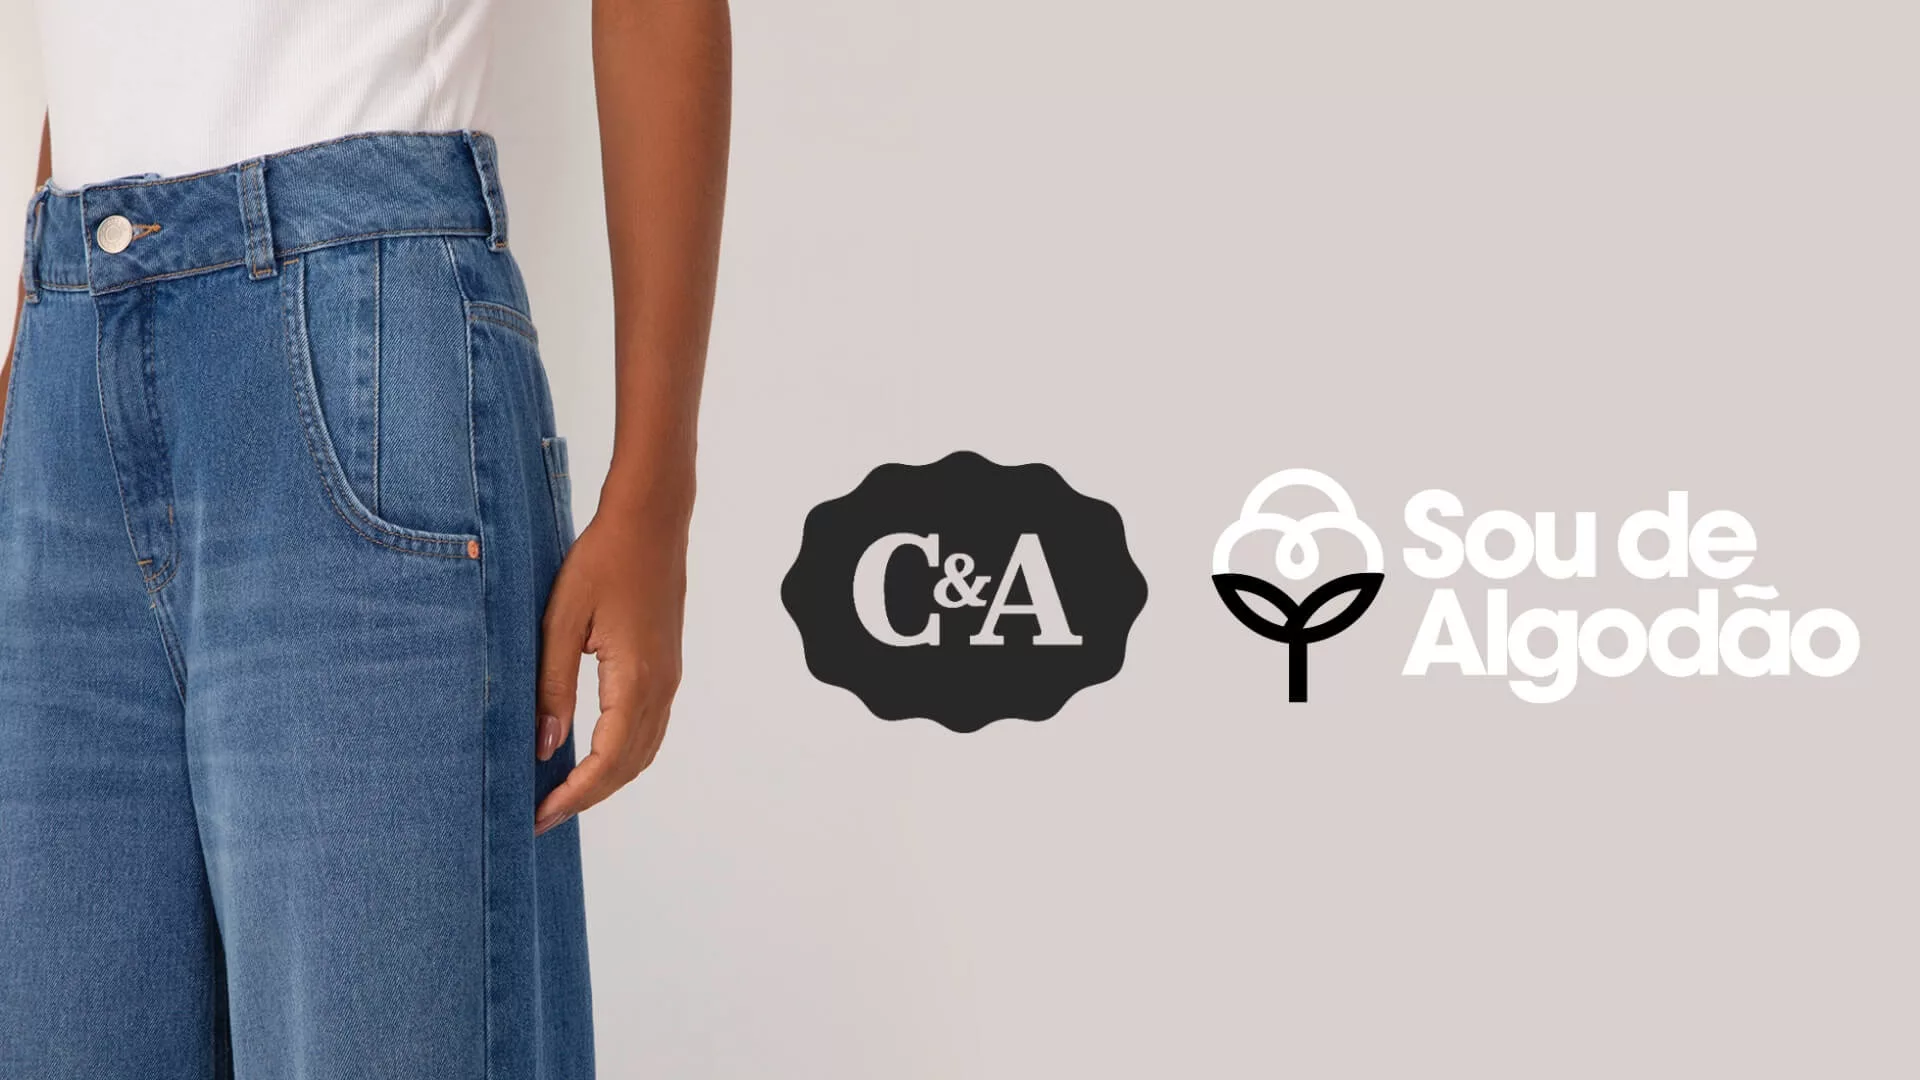 C&A e Sou de Algodão se unem para lançar coleção de jeans sustentáveis